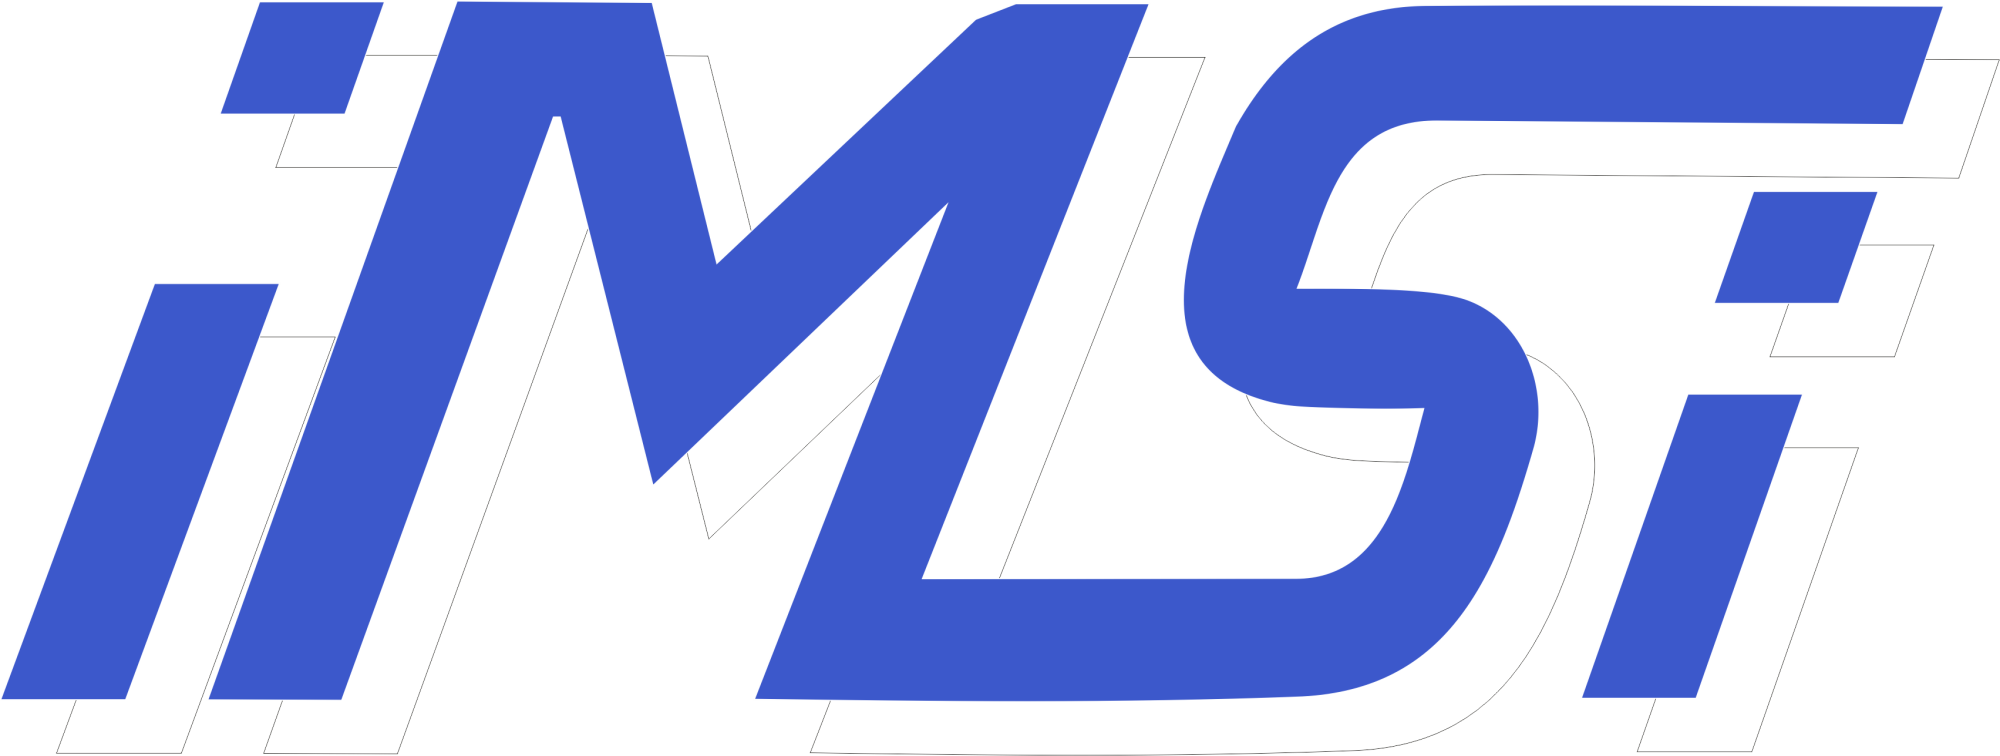 logo instytutu mechatroniki i systemów informatycznych